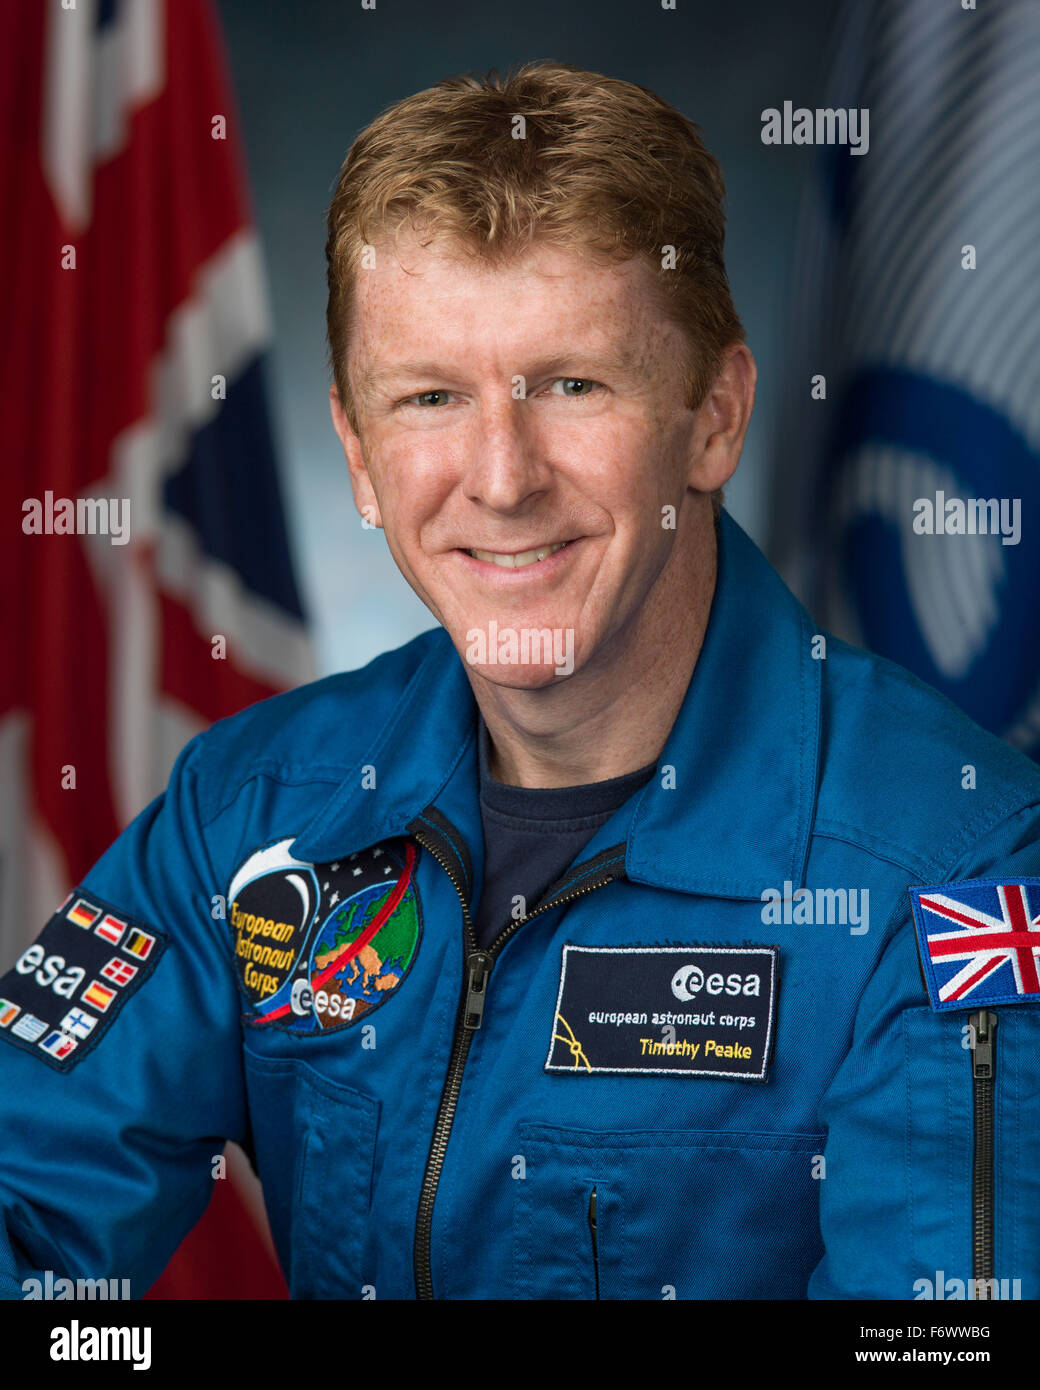 Agenzia spaziale europea astronauta e spedizione 46/47 Tecnico di volo Timothy Peake ritratto ufficiale che indossa il blu tuta di volo presso il Johnson Space Center Agosto 28, 2013 a Houston, Texas. Foto Stock